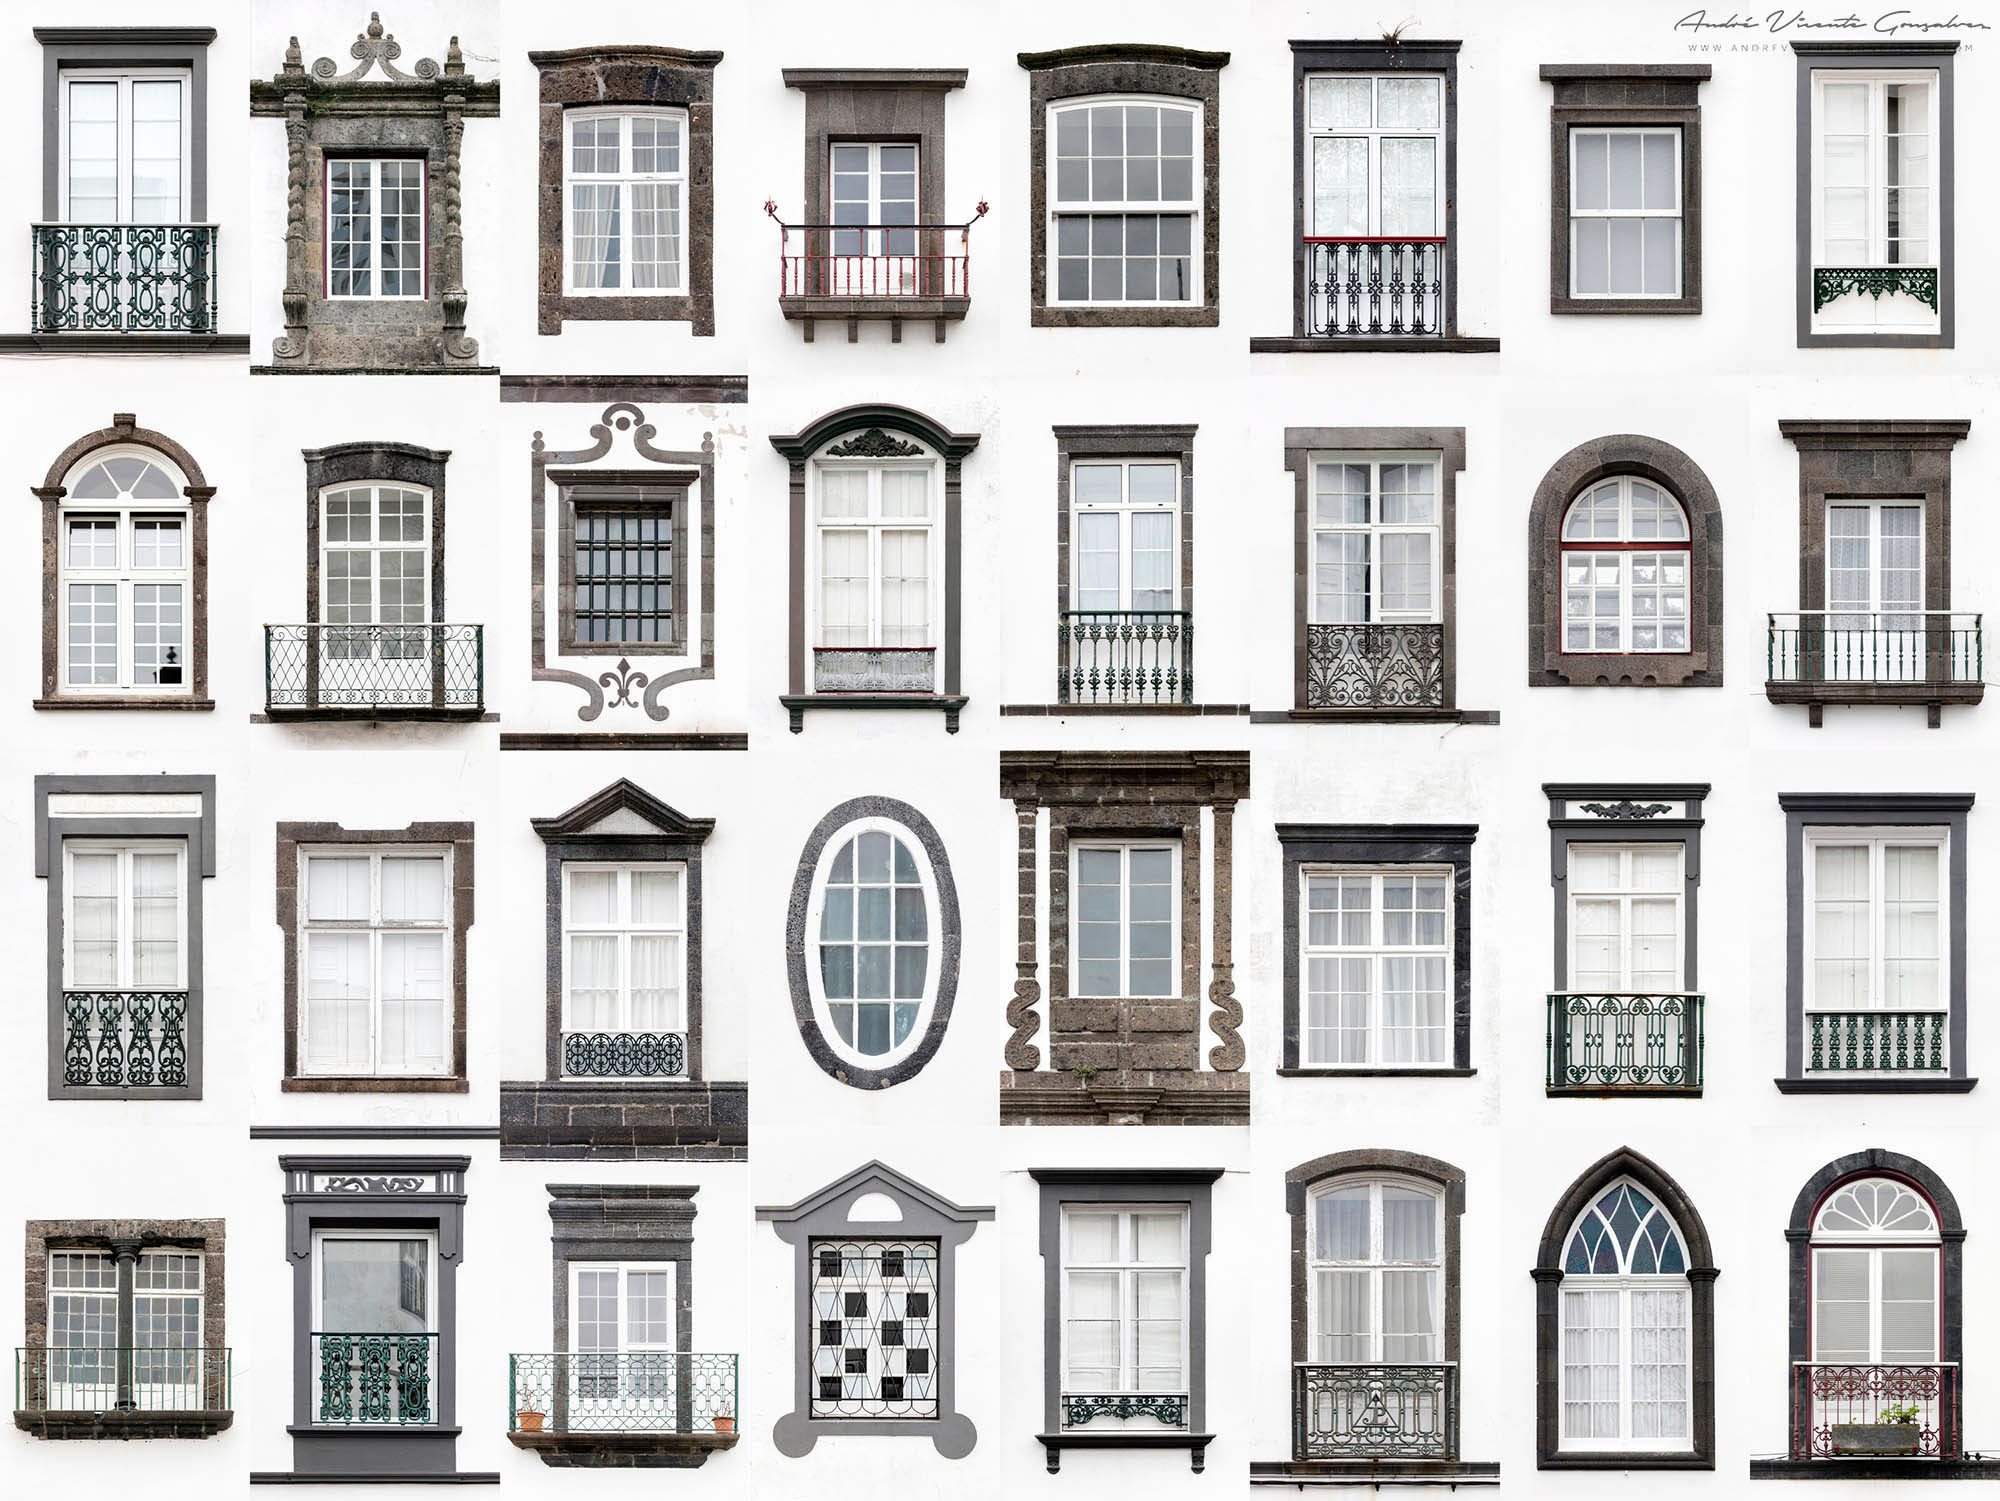 Window elements. Окна в разных архитектурных стилях. Окна в викторианском стиле. Элементы обрамления окна. Окна на фасаде.